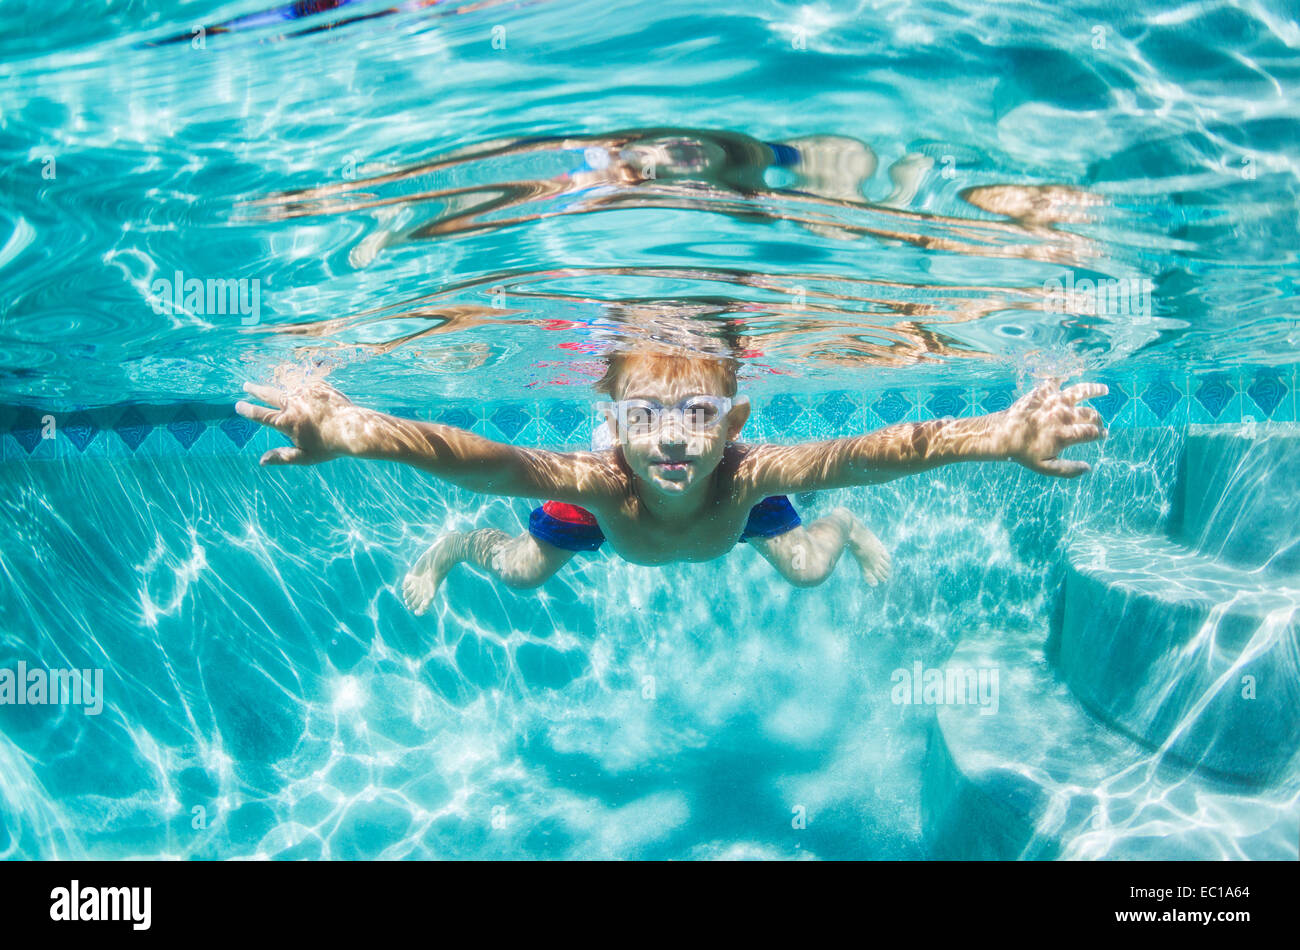 Underwater chico divertido en la piscina con gafas. Divertidas vacaciones de verano. Foto de stock